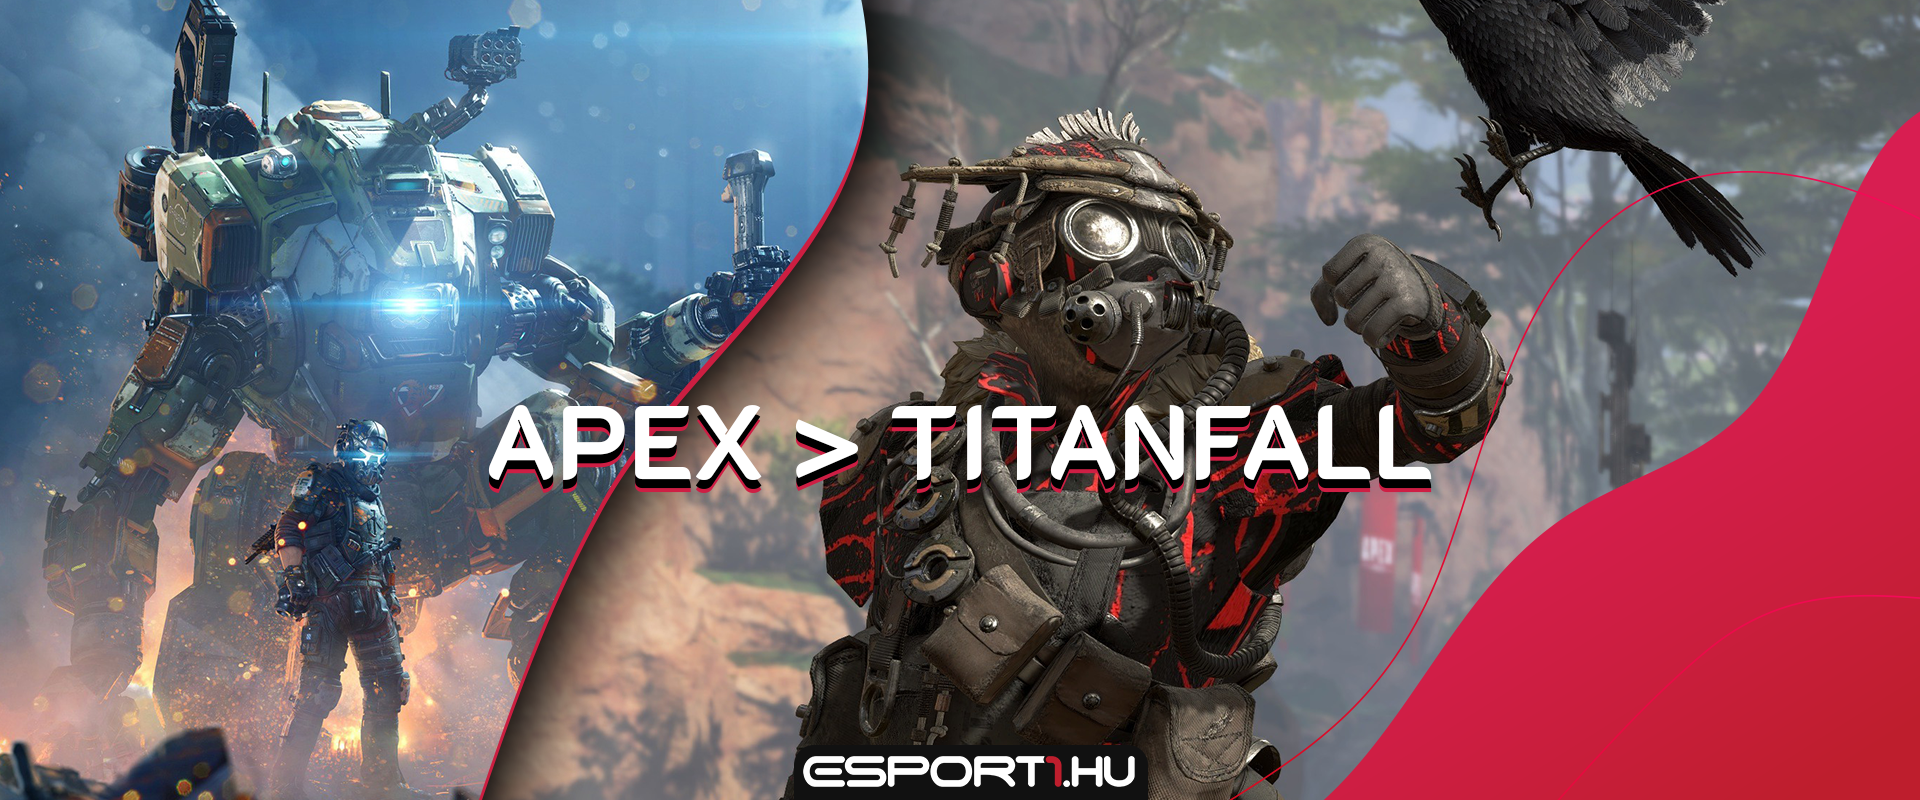 Félreteszi a Respawn a Titanfall projektet az Apex Legends miatt